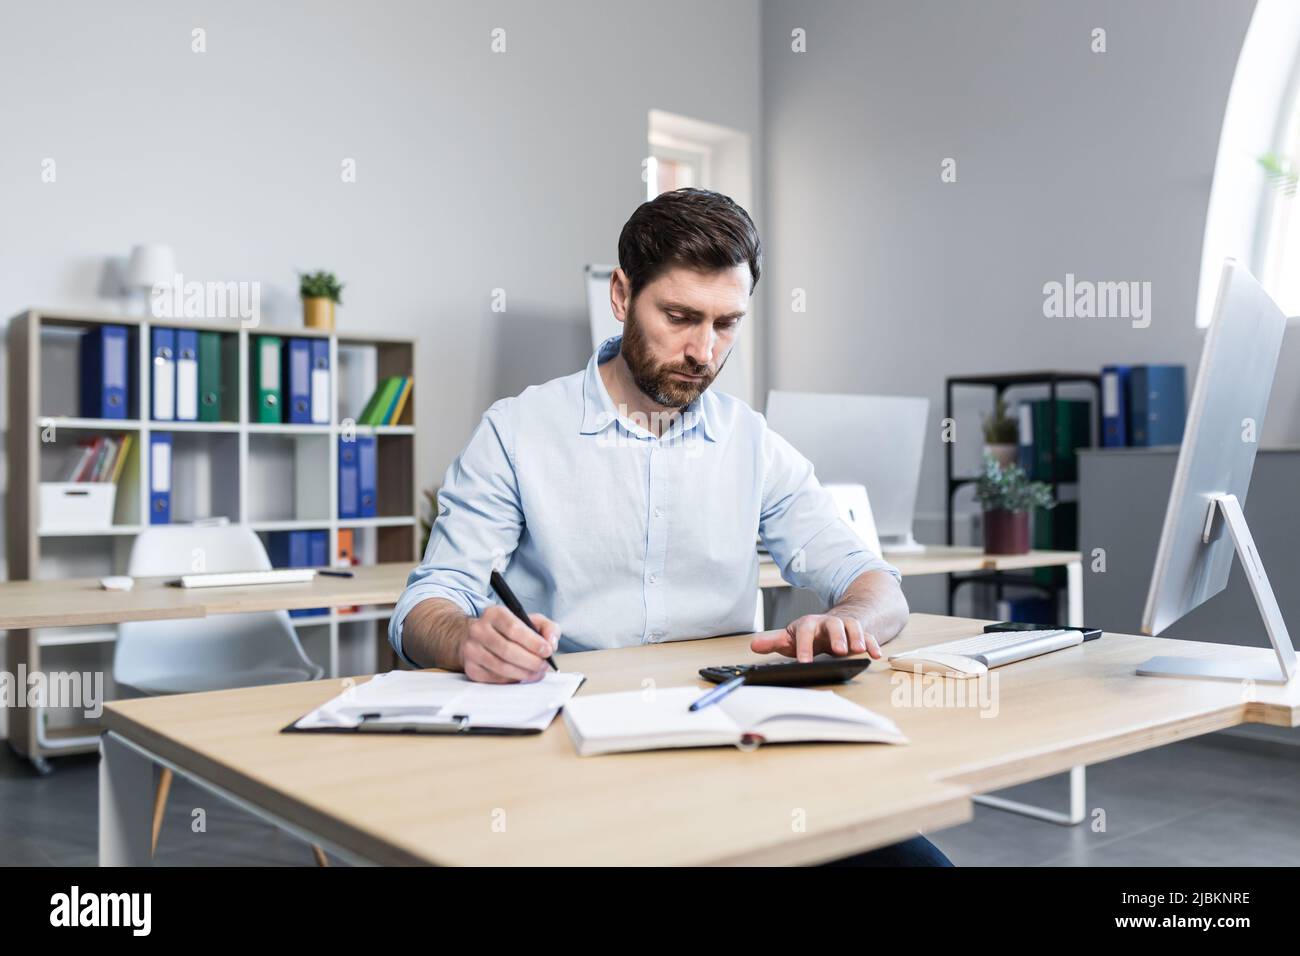 Porträt eines jungen Mannes. Buchhalter, Ökonom, Finanzierer. Setzt auf einen Rechner, sitzt am Schreibtisch am Computer, arbeitet mit Dokumenten Stockfoto